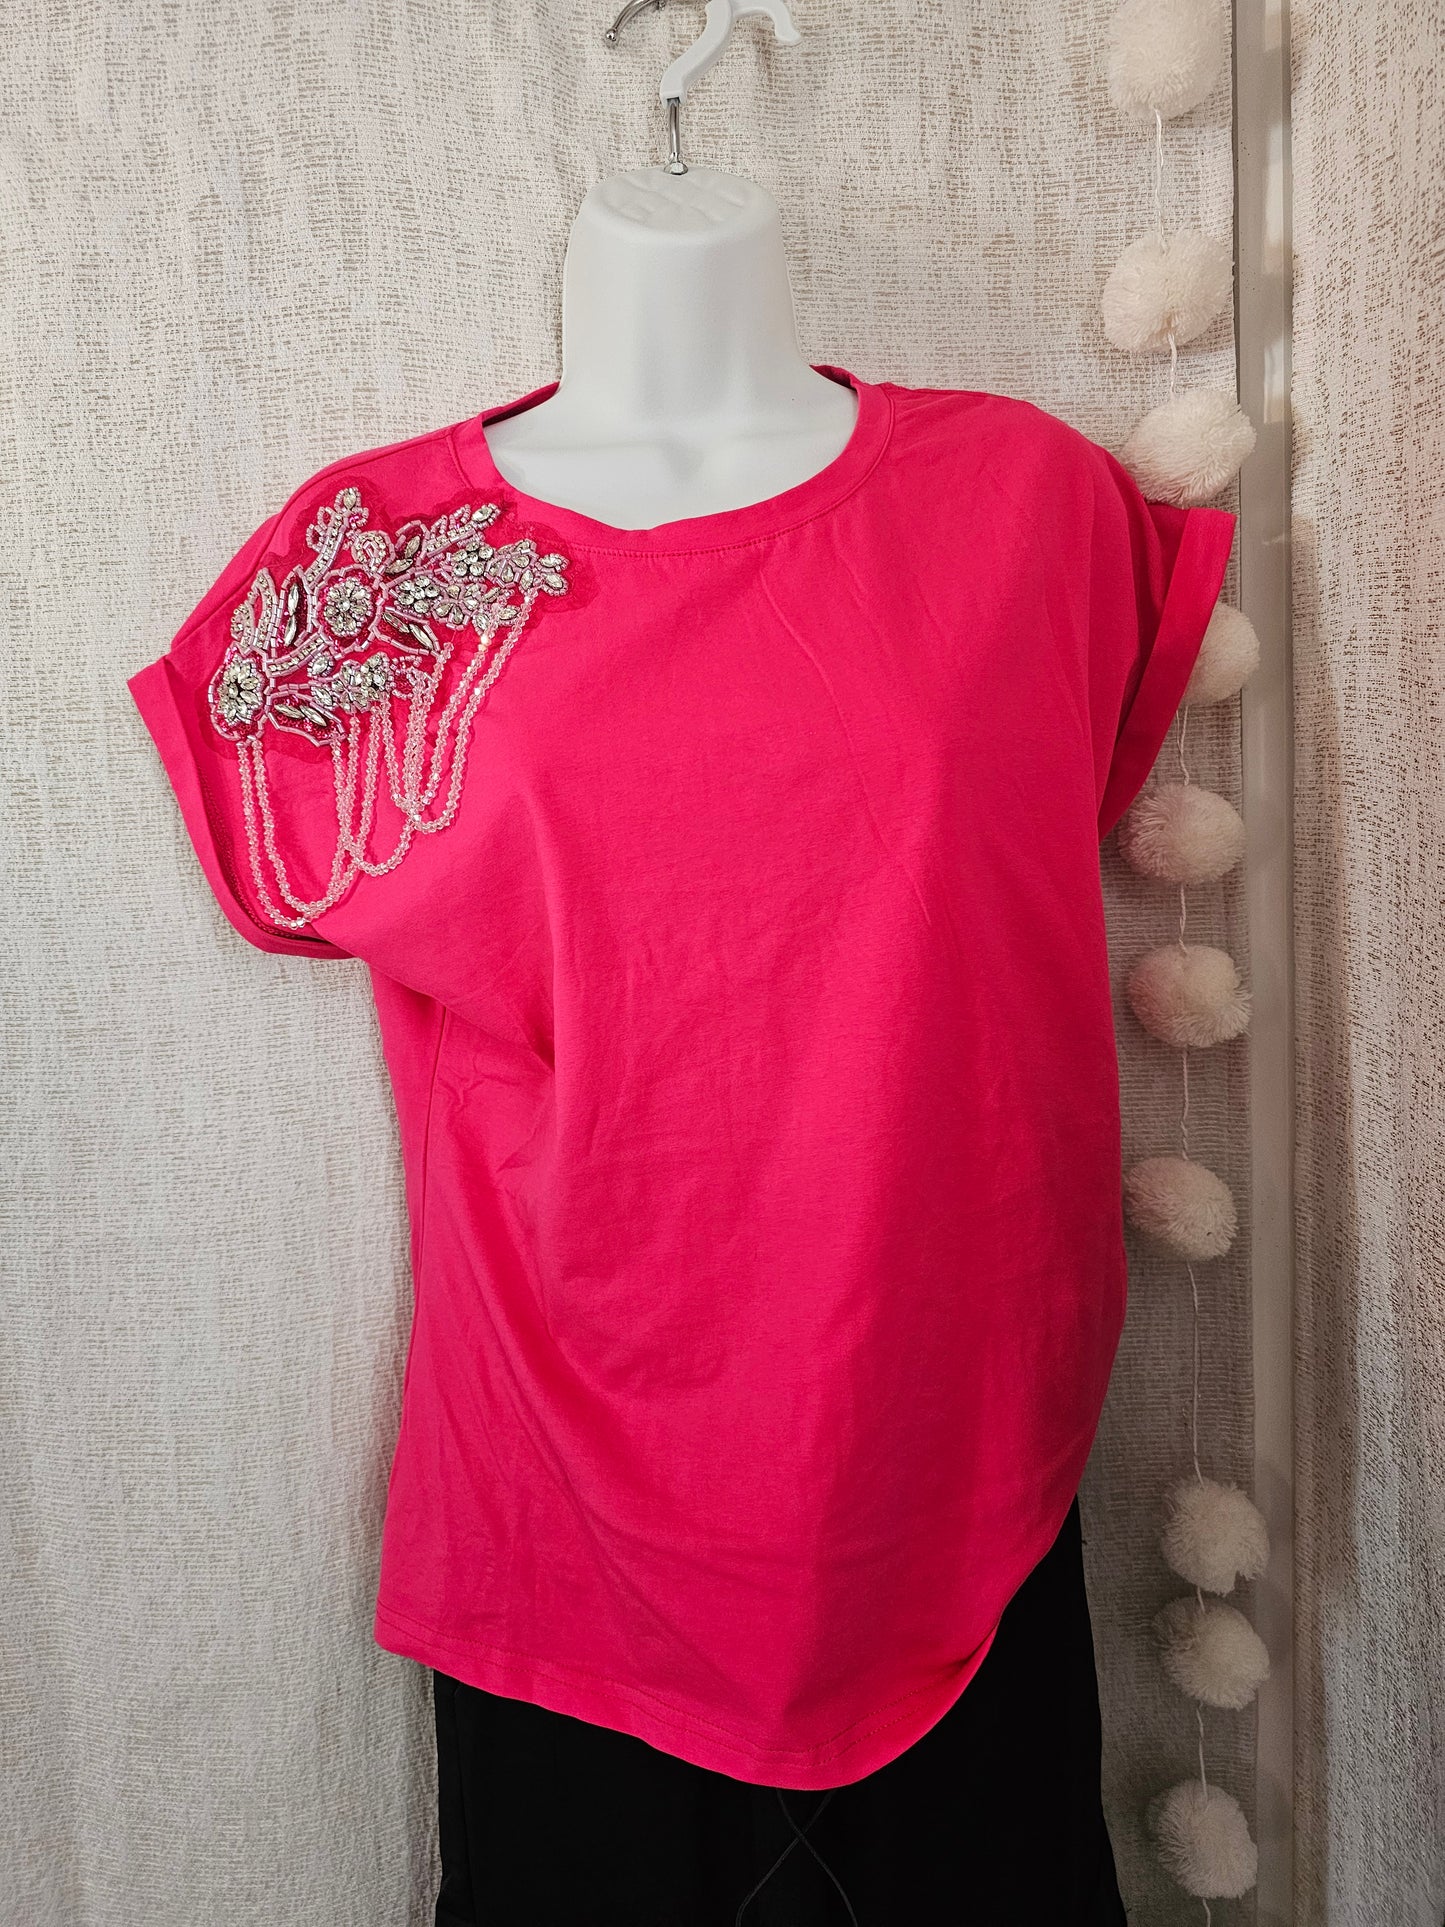 Crystal Embellished T-shirt Pink